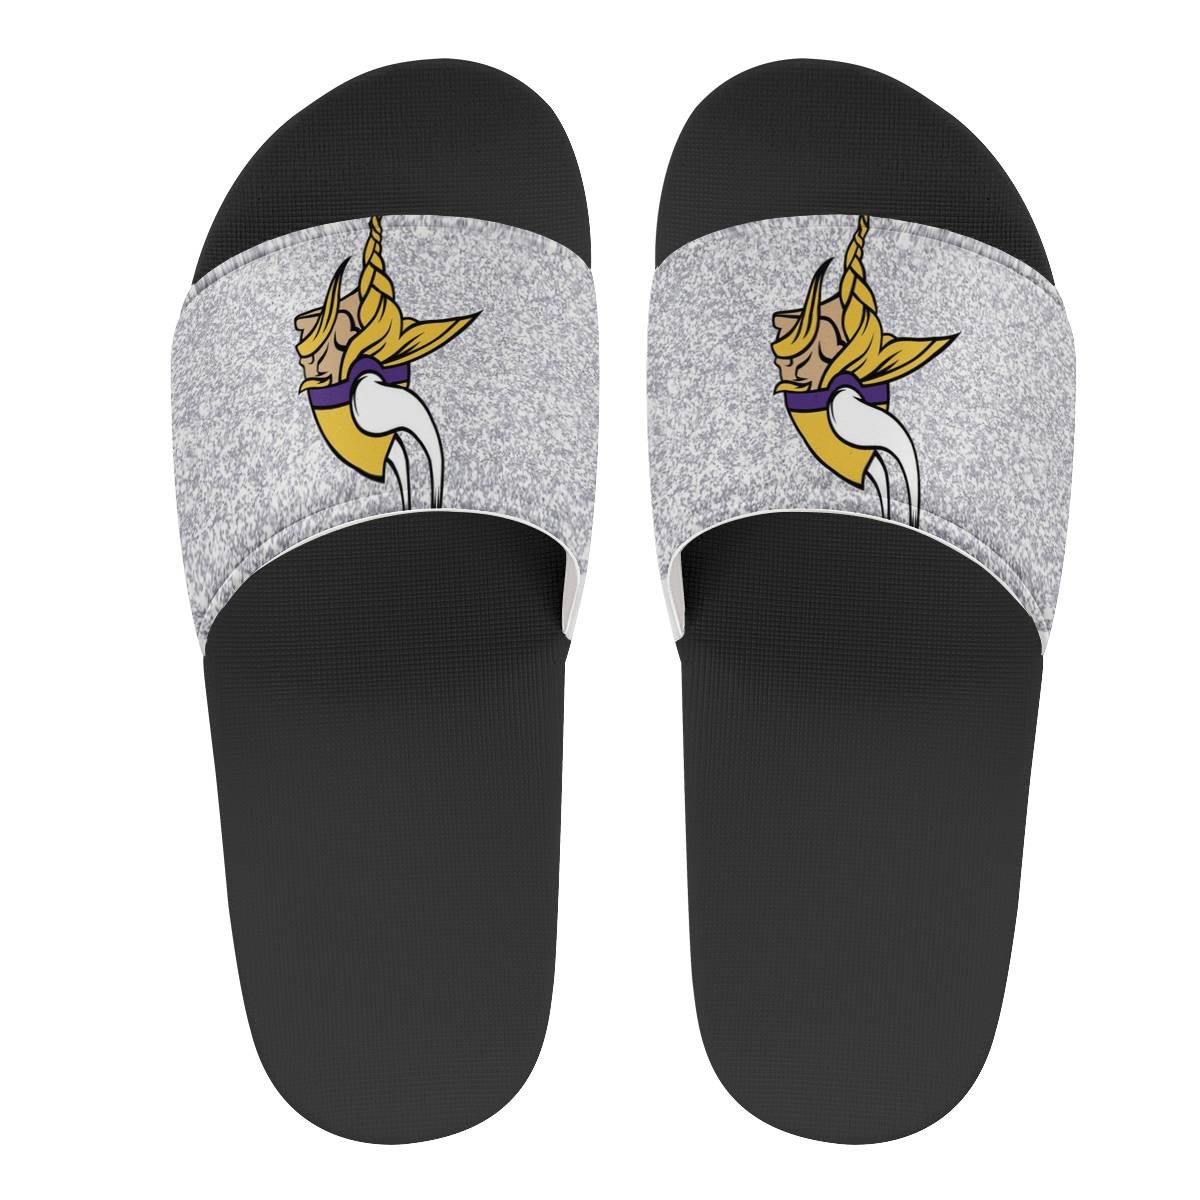 Men's Minnesota Vikings Flip Flops 002